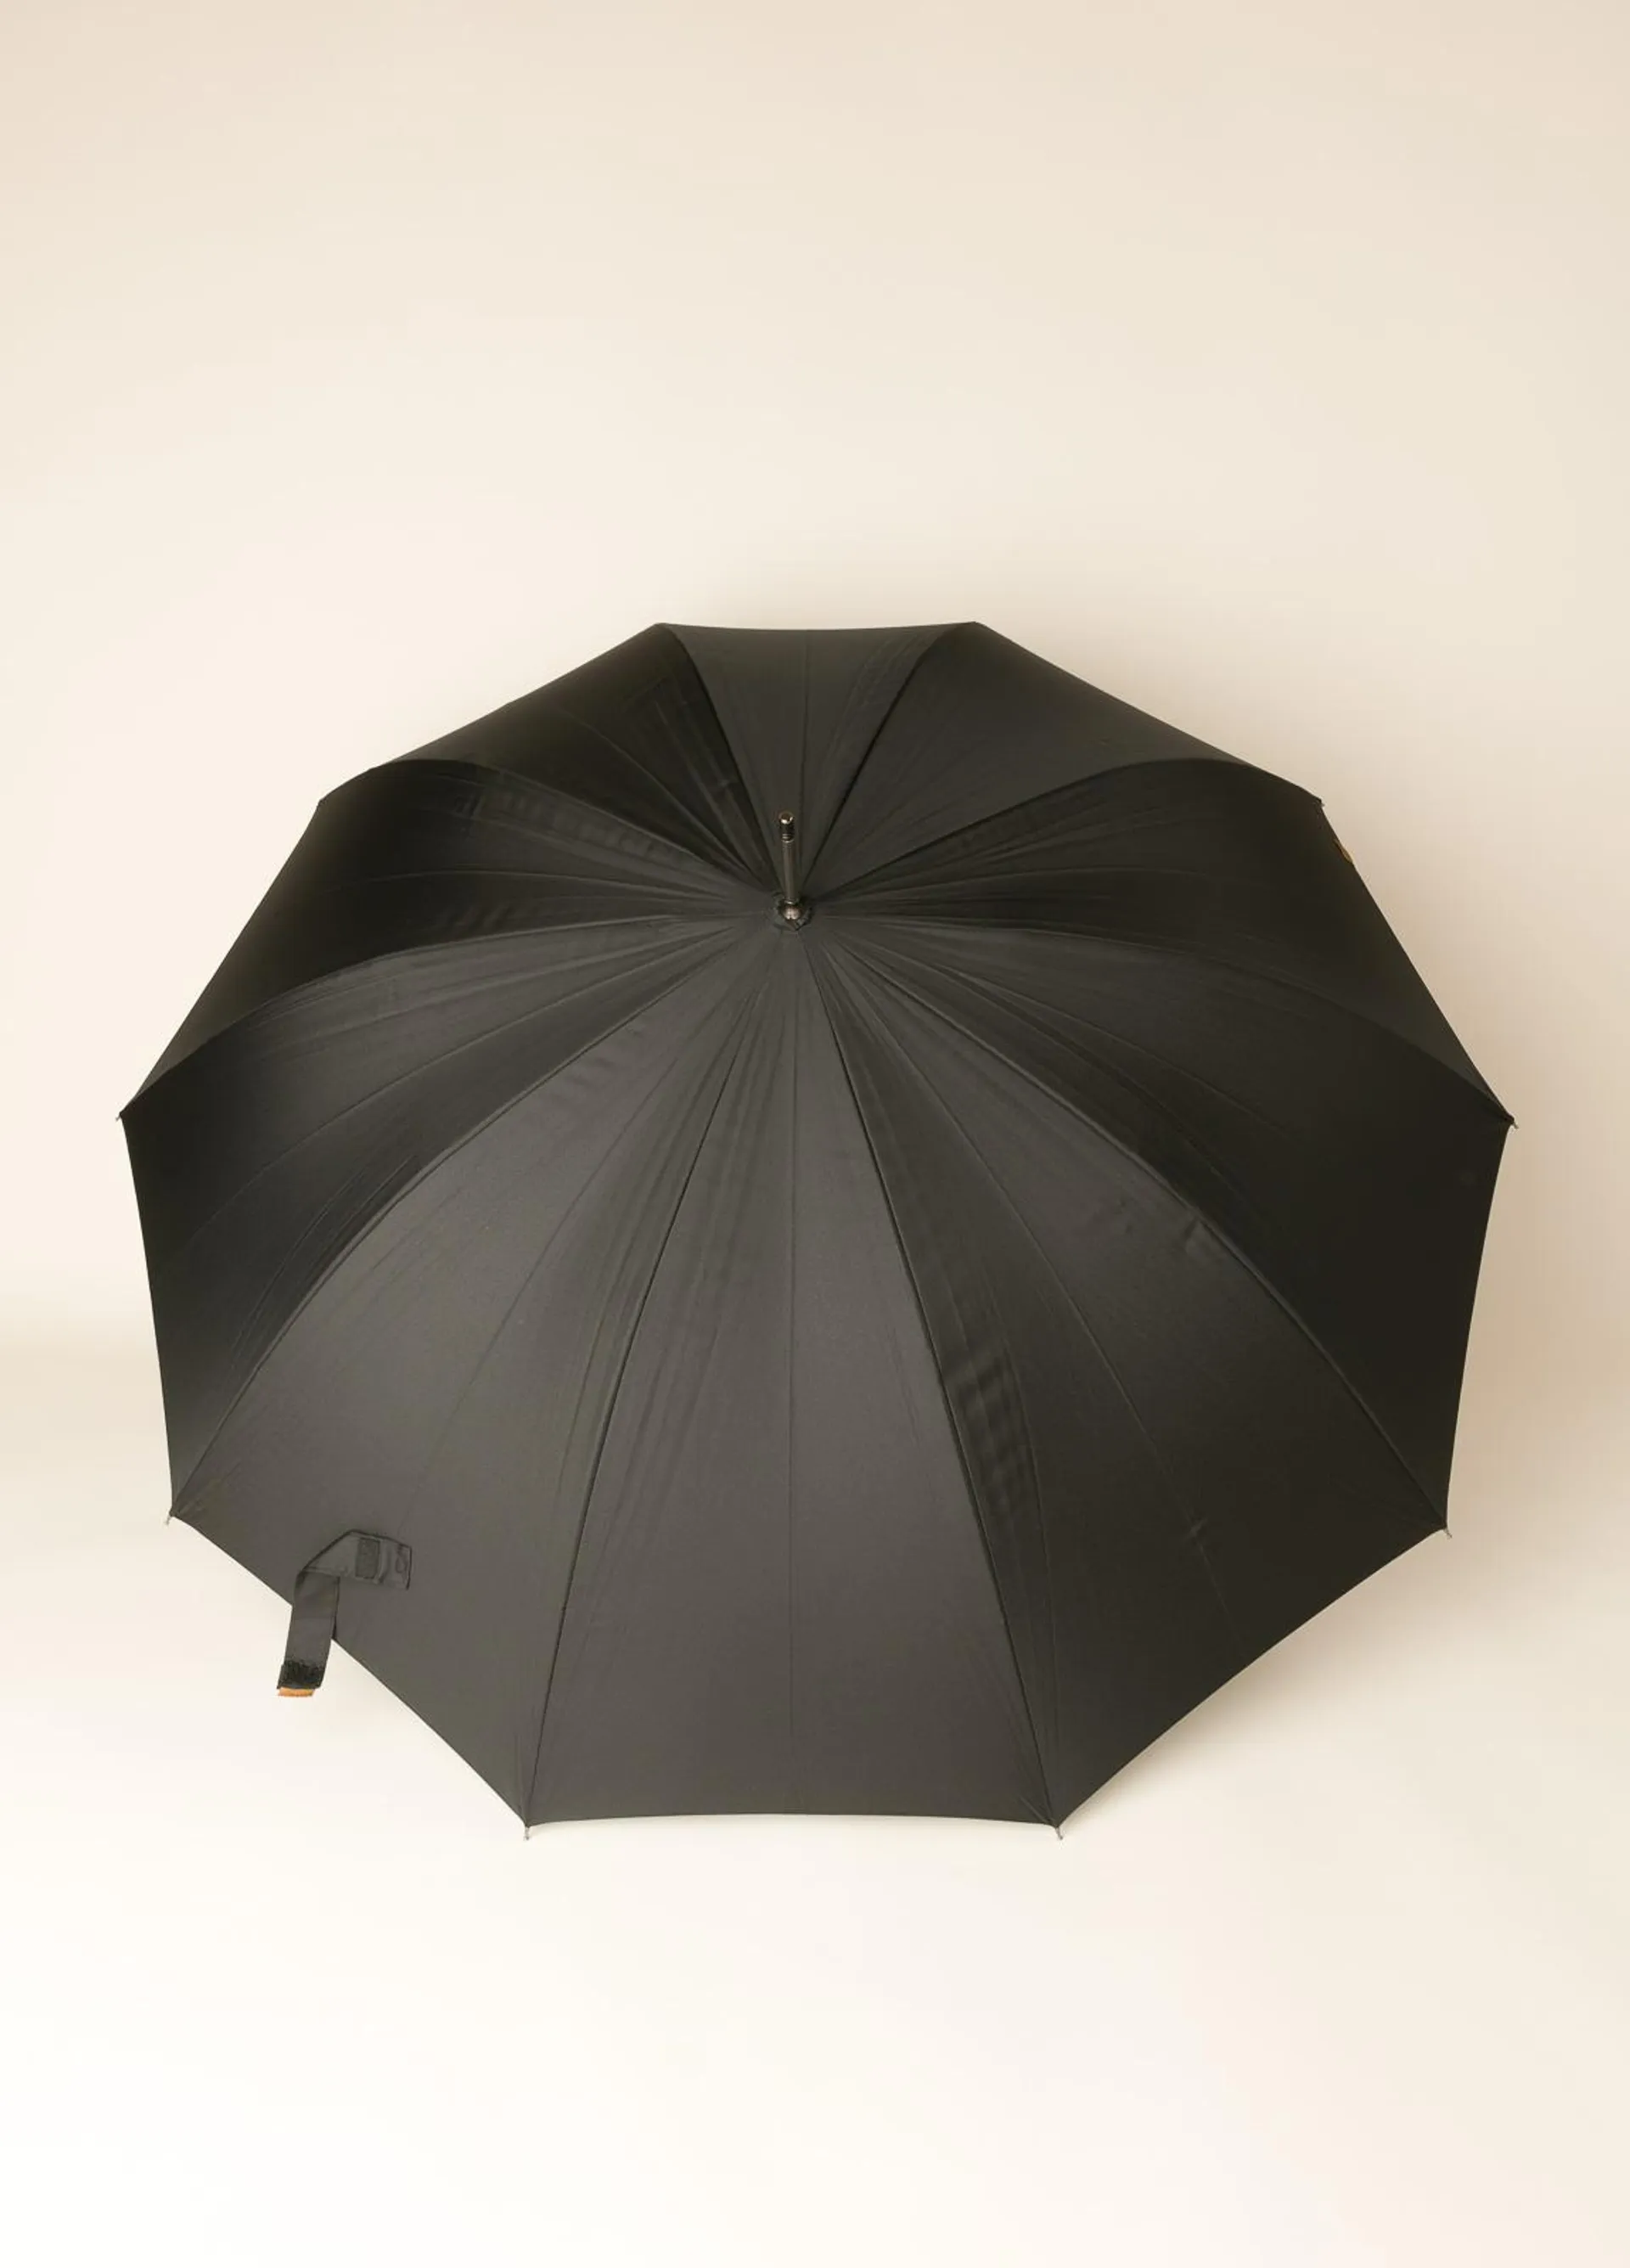 Paraguas FUREST COLECCIÓN negro con puño de madera.